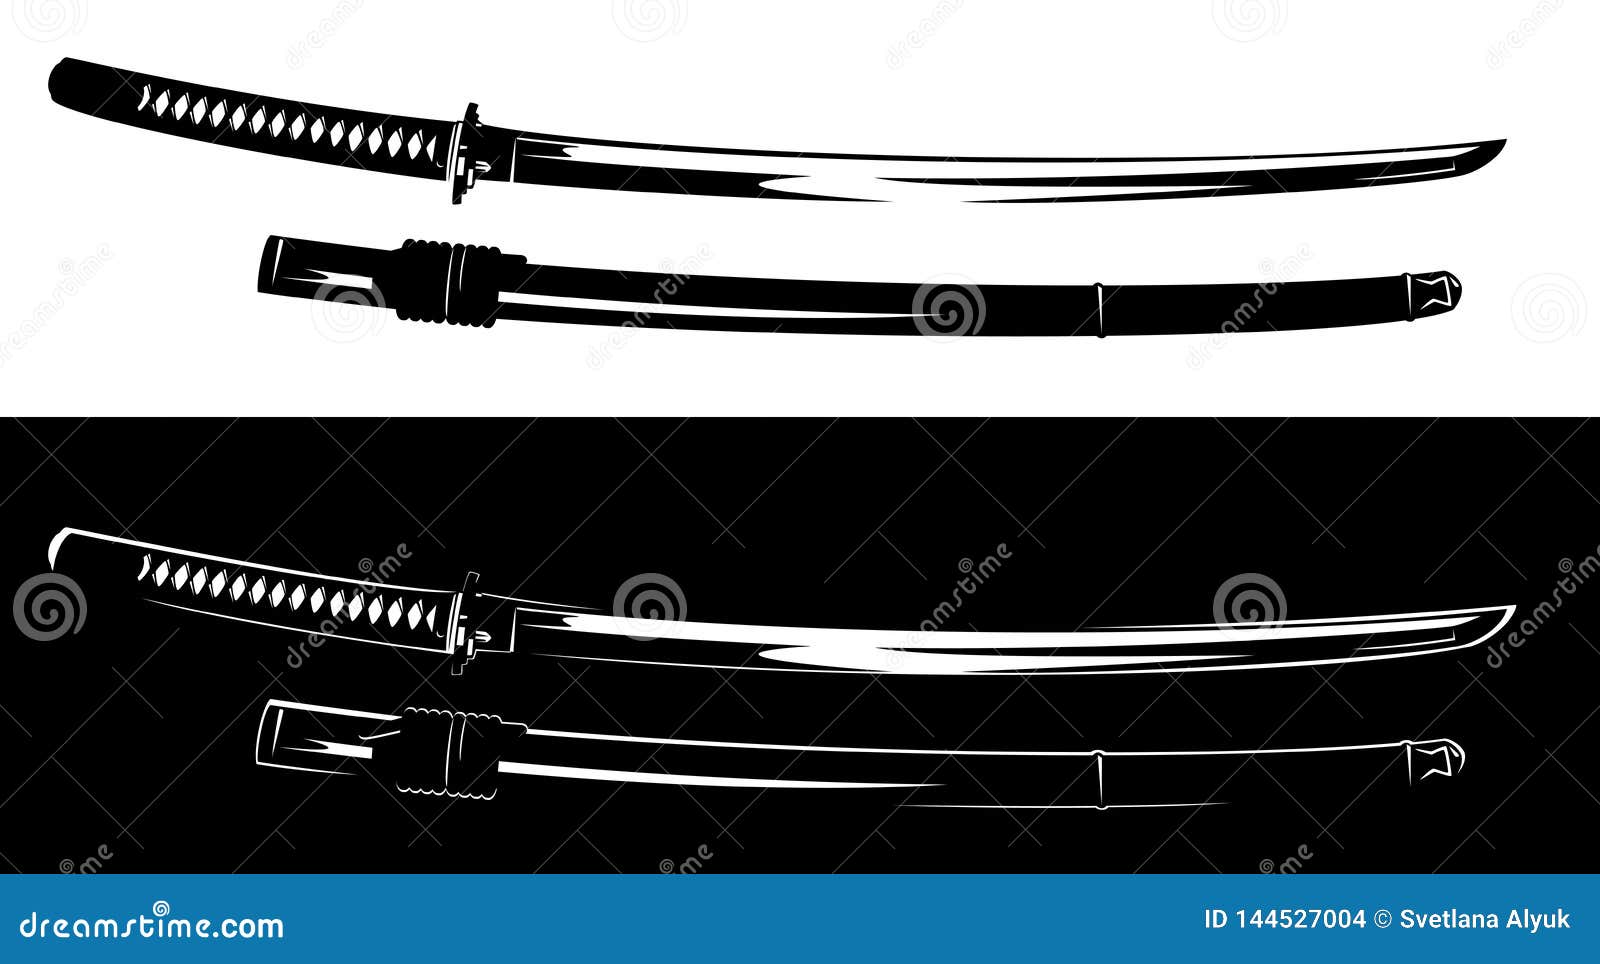 black and white samurai katana sword  